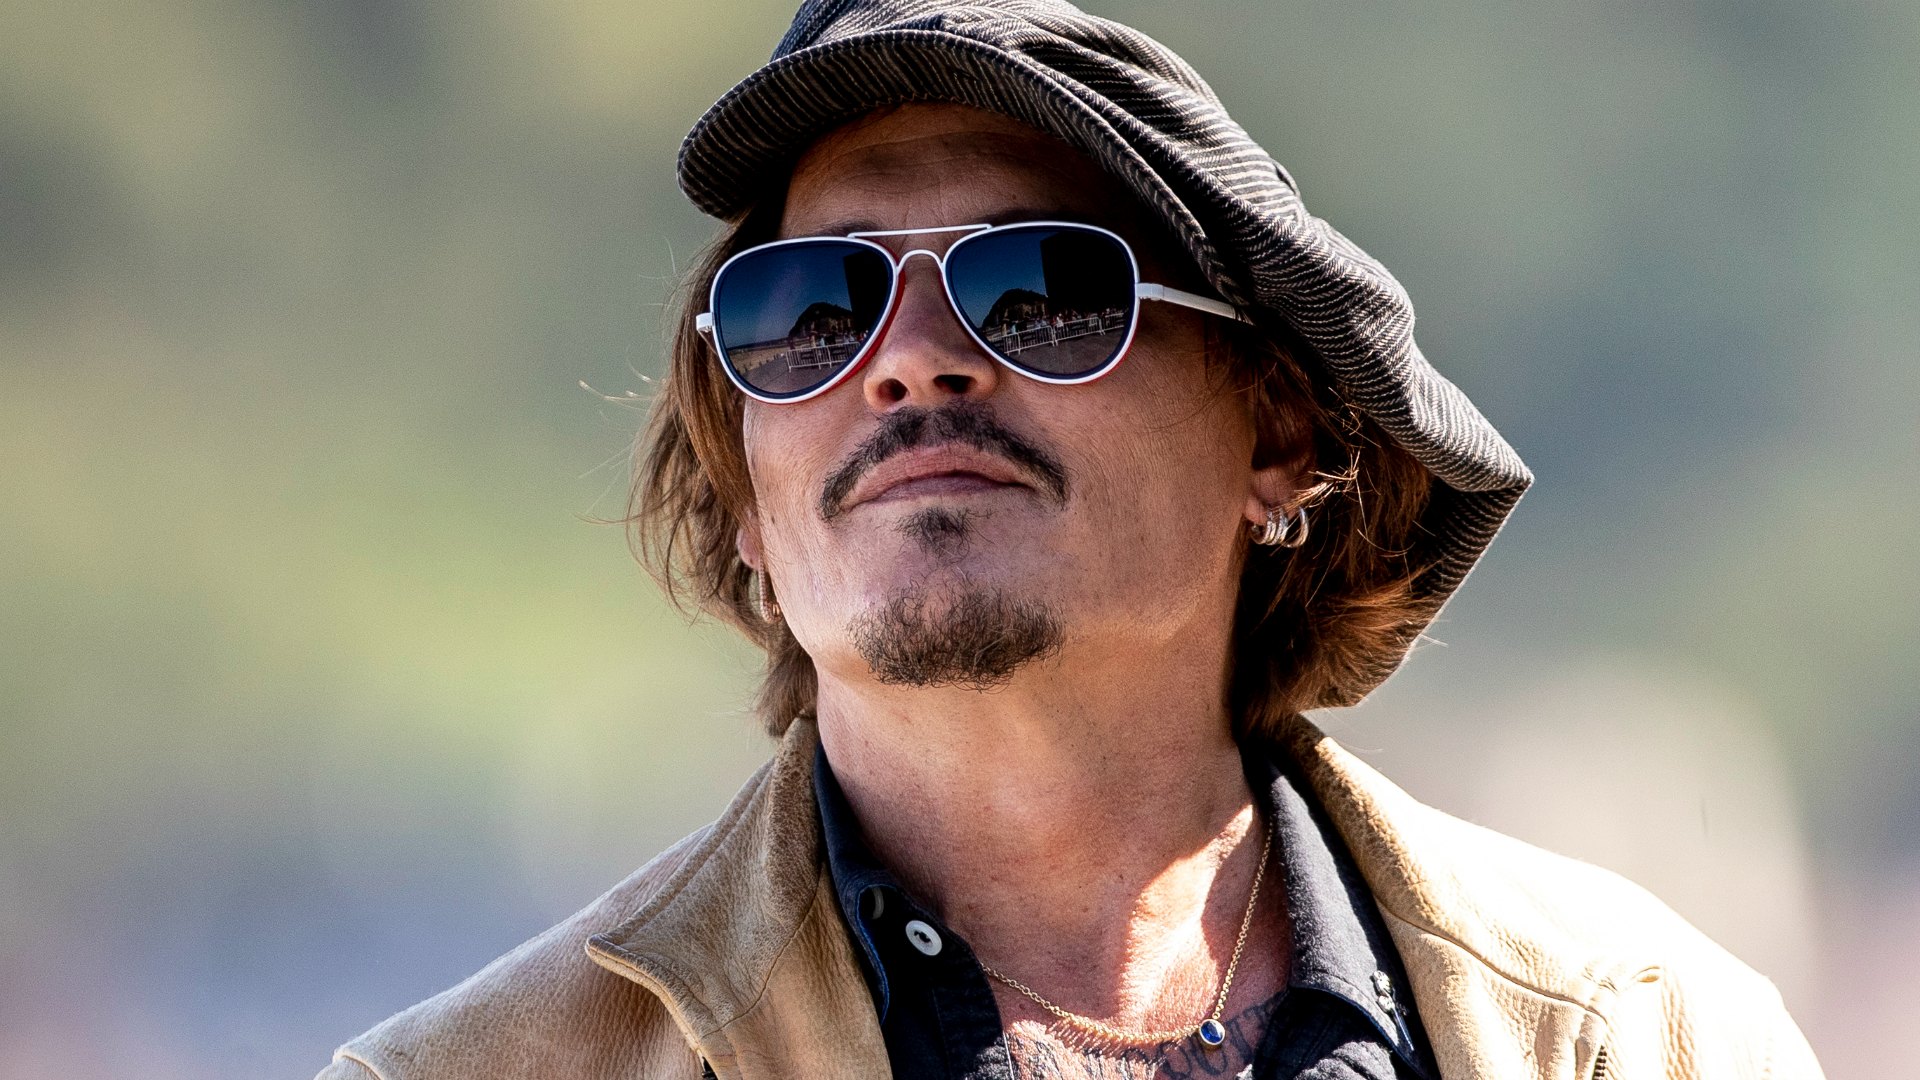 La loca visita de Johnny Depp a San Sebastián